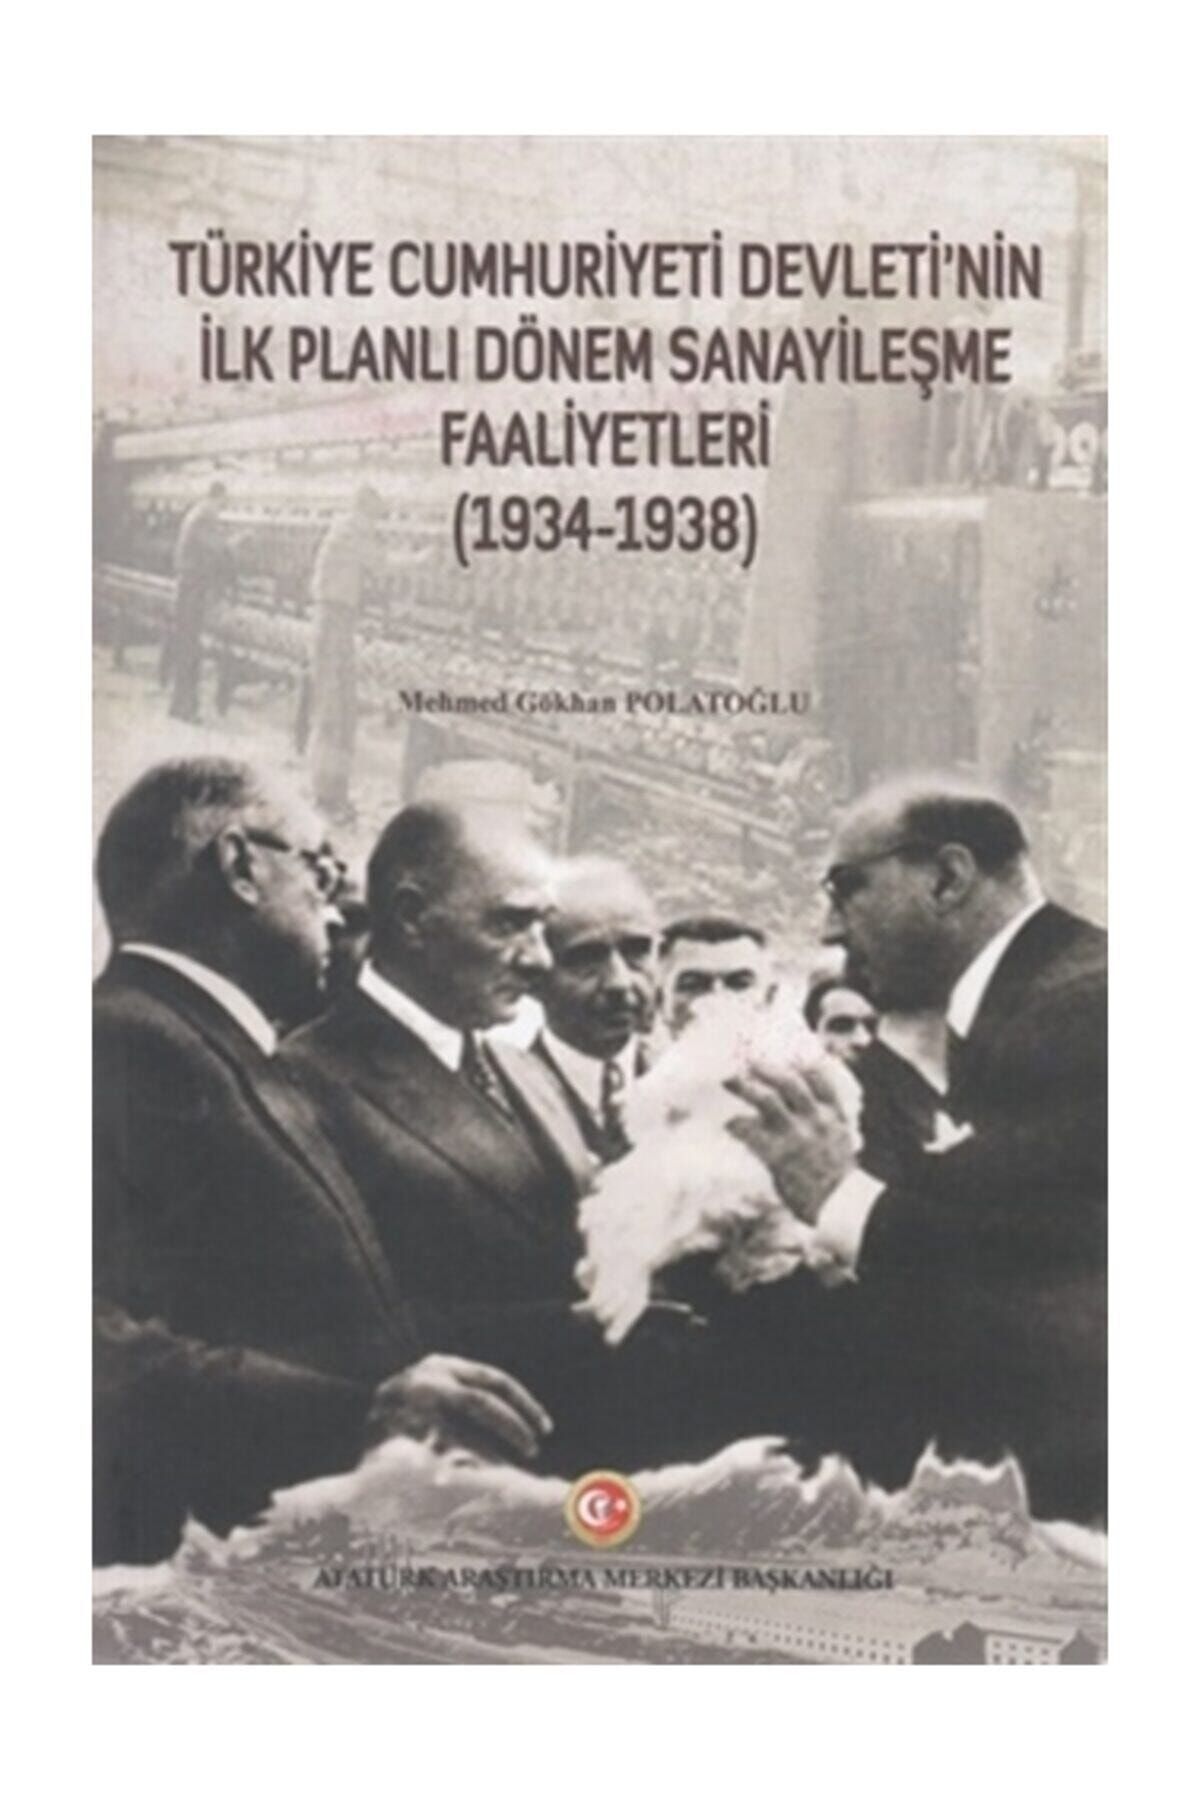 Atatürk Araştırma Merkezi Türkiye Cumhuriyeti Devleti'nin Ilk Planlı Dönem Sanayileşme Faaliyetleri (1934-1938)